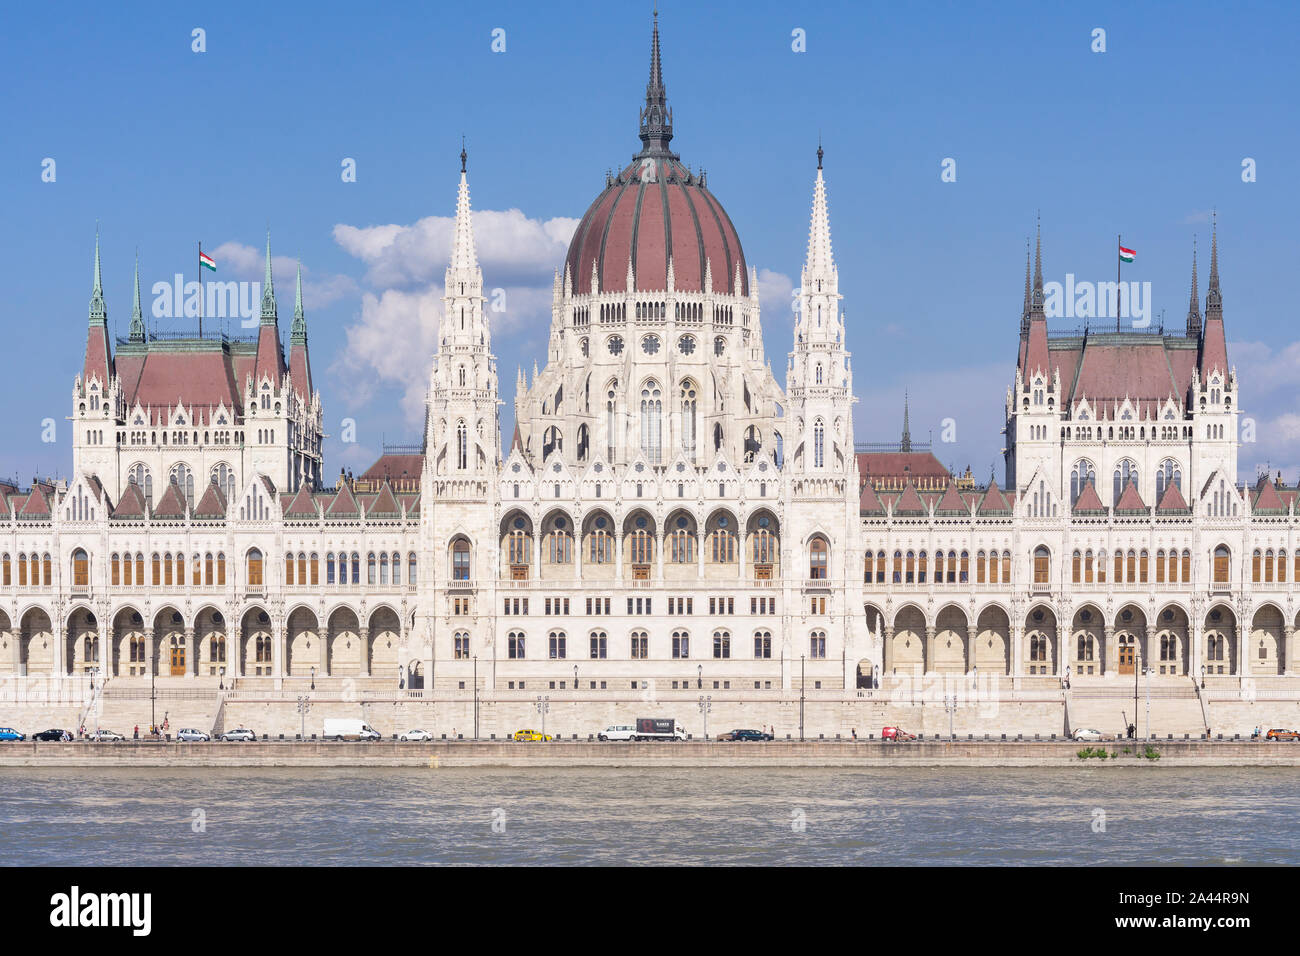 Le parlement de Budapest - bâtiment du parlement hongrois comme vu sur le Danube à Budapest, Hongrie. Banque D'Images